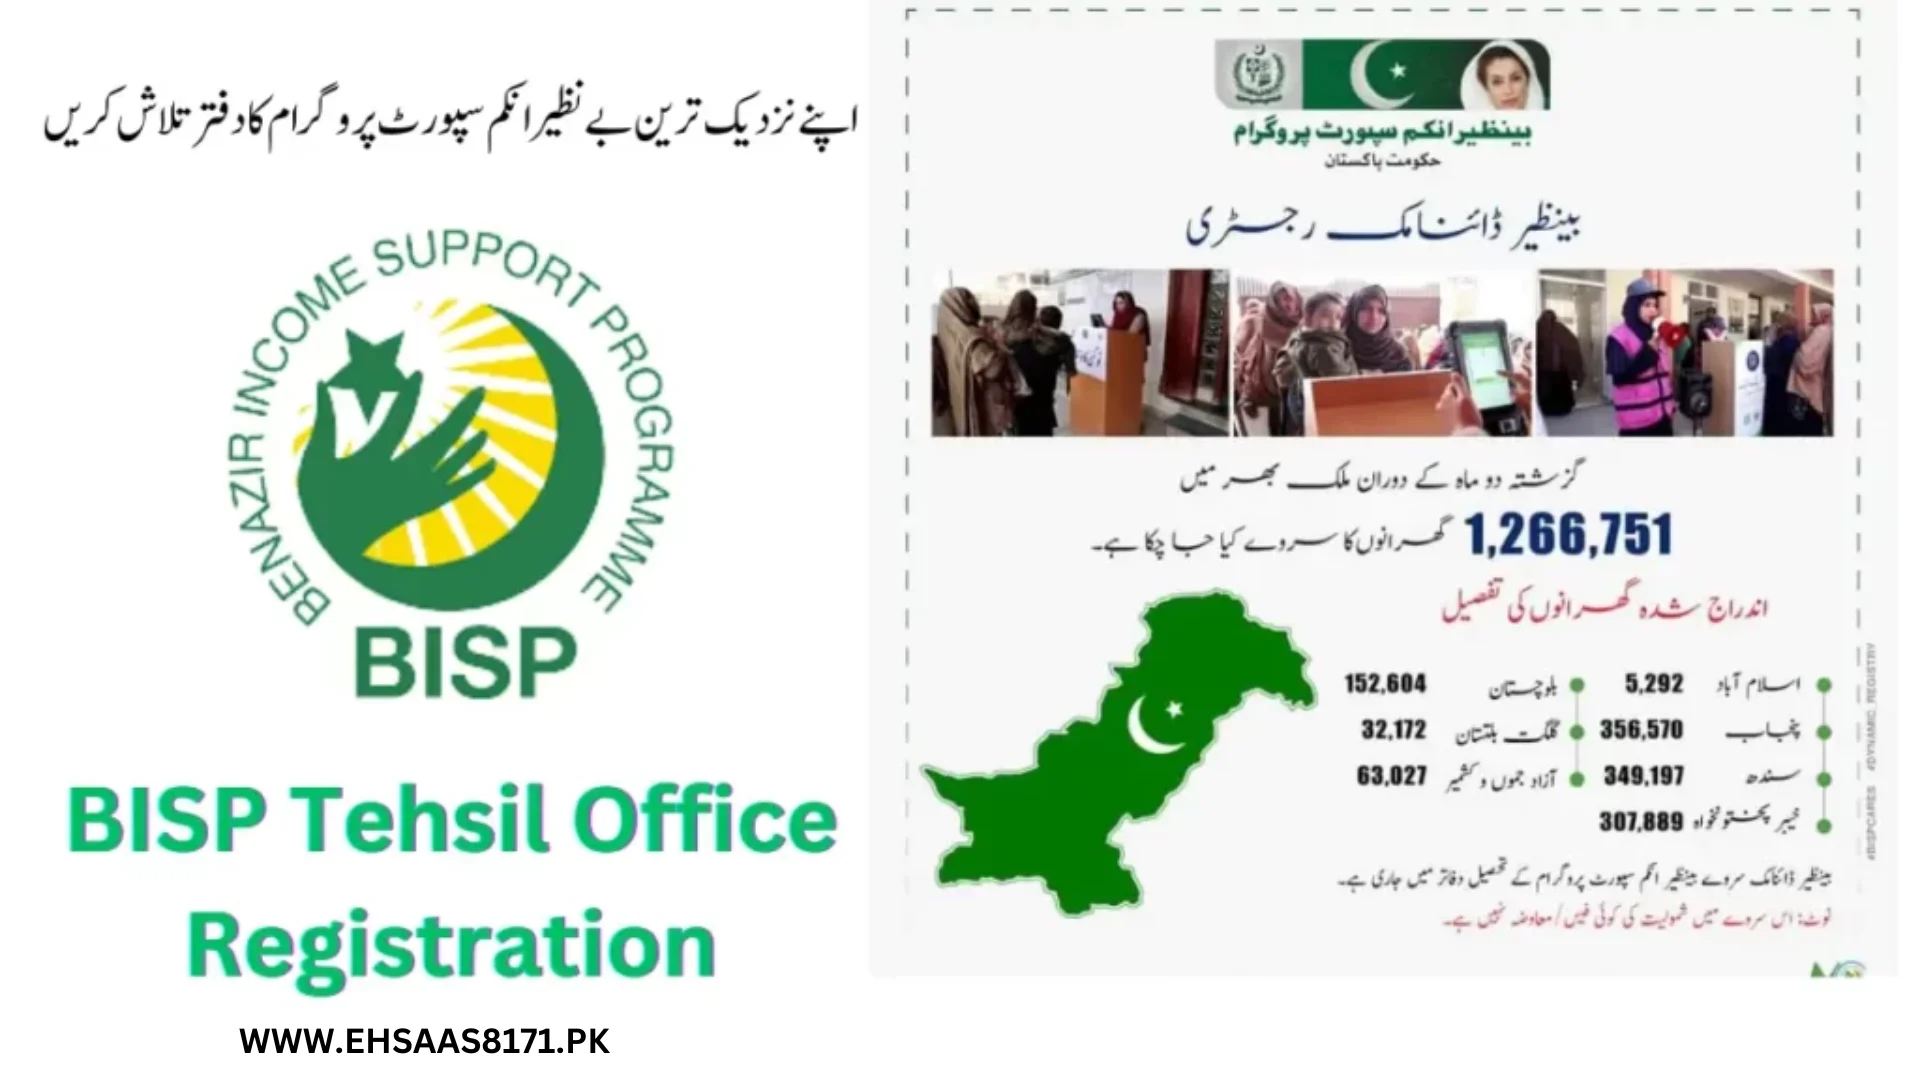 Registration at BISP Tehsil Office